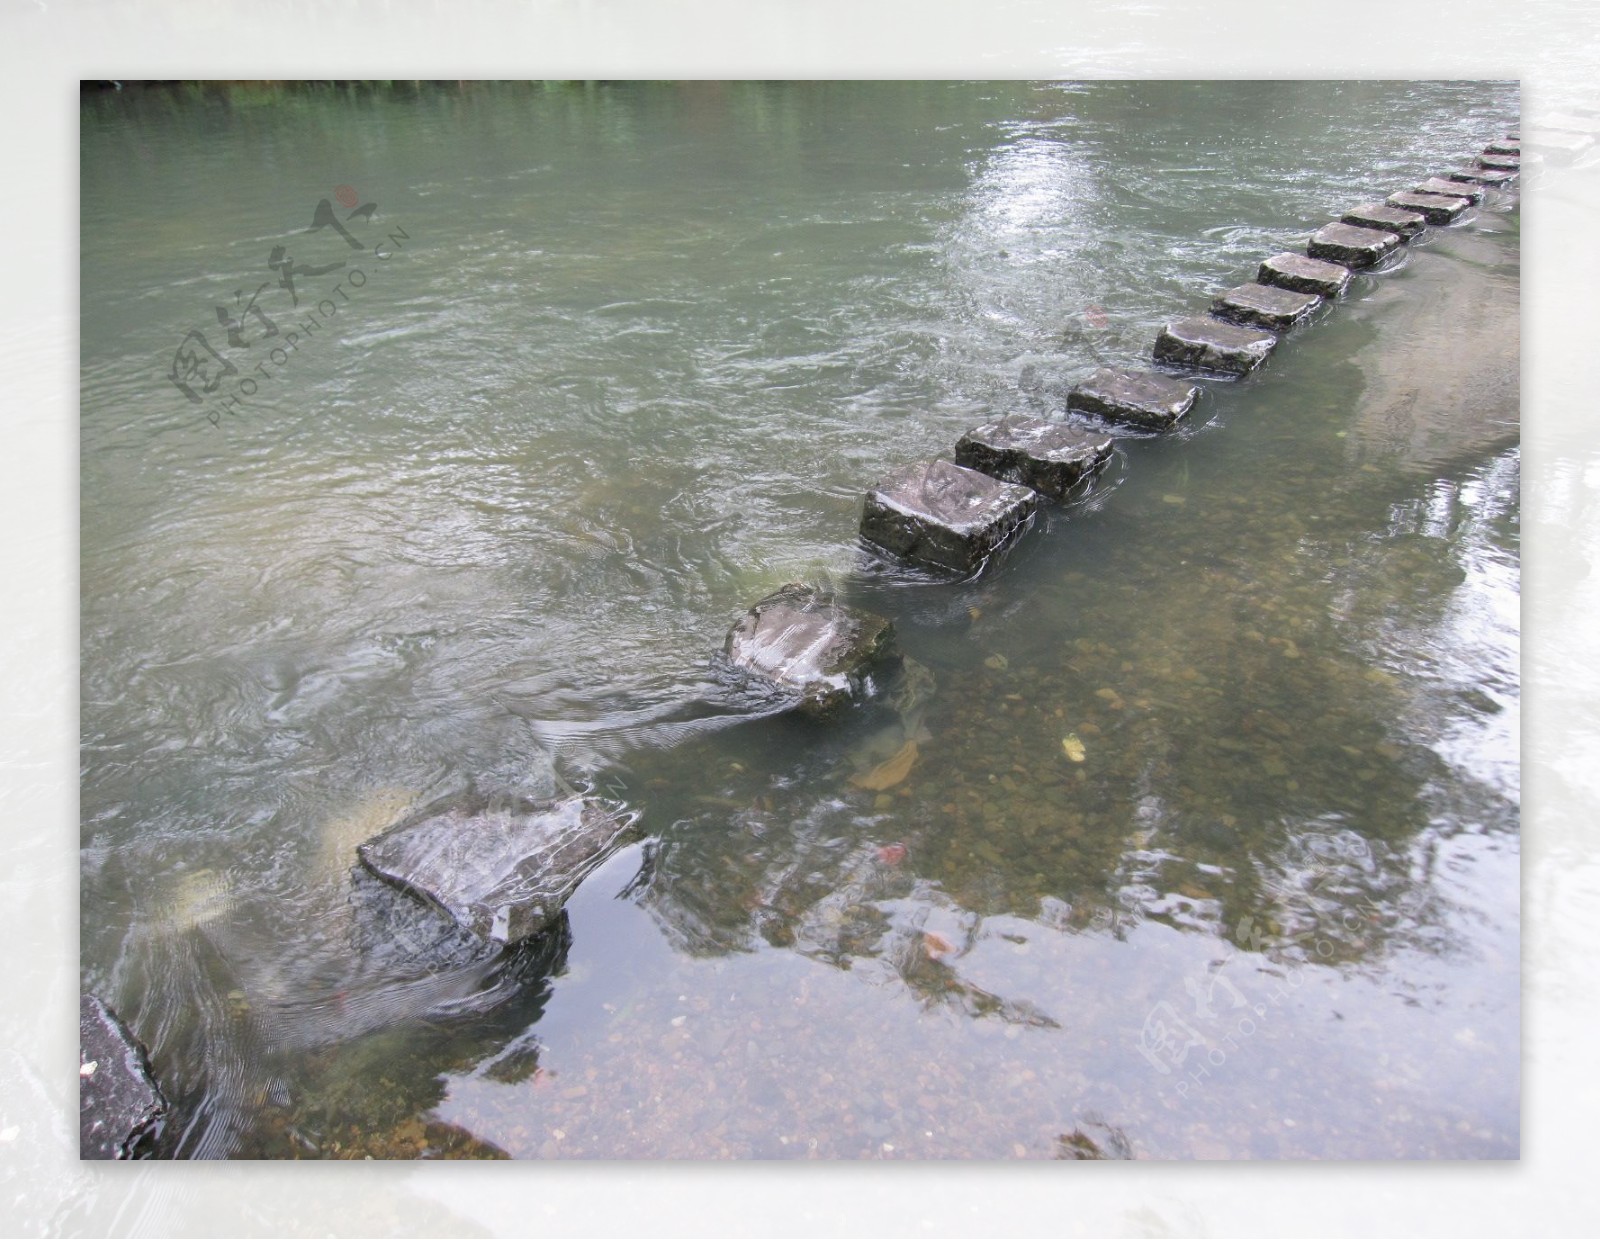 在桂林黄姚旅游区内有一条很小的小河铺着一条小小的石路